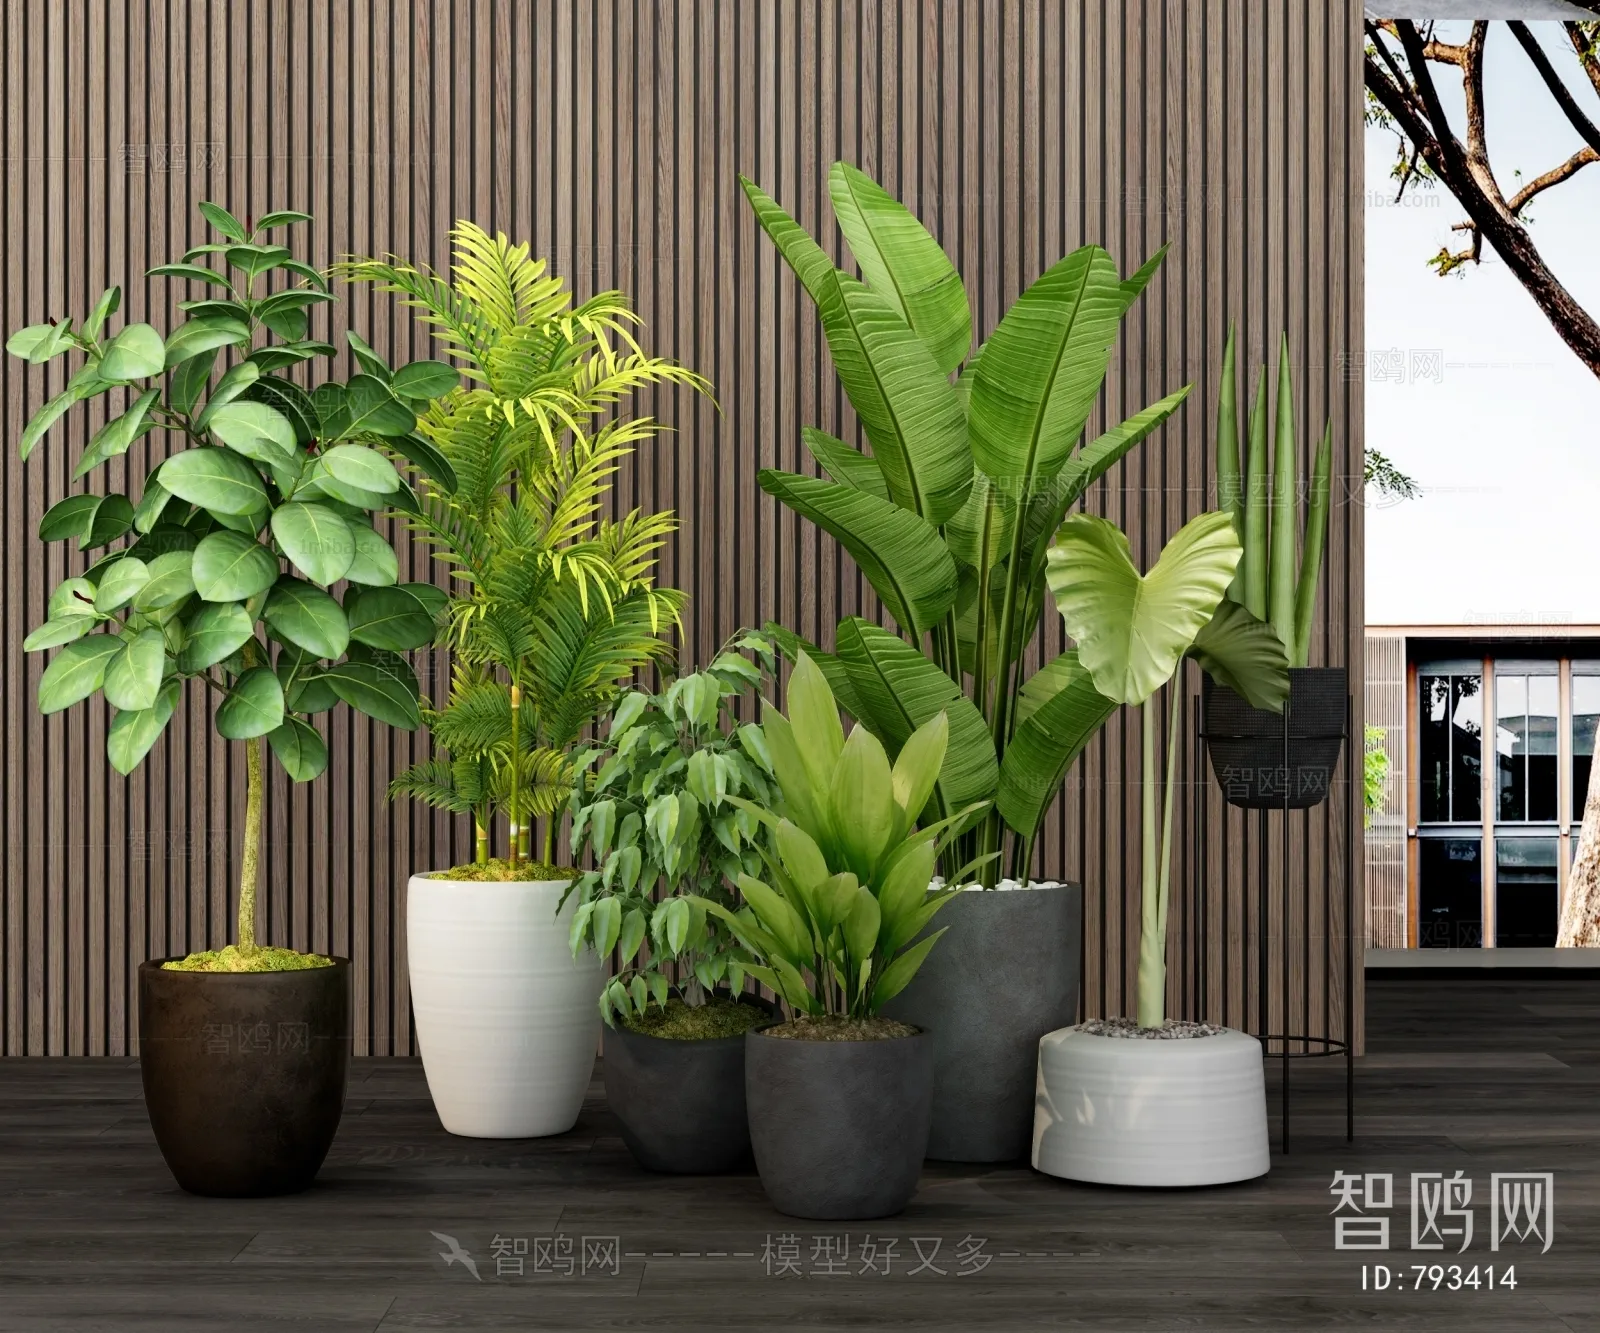 PLANT 3D MODELS – 032